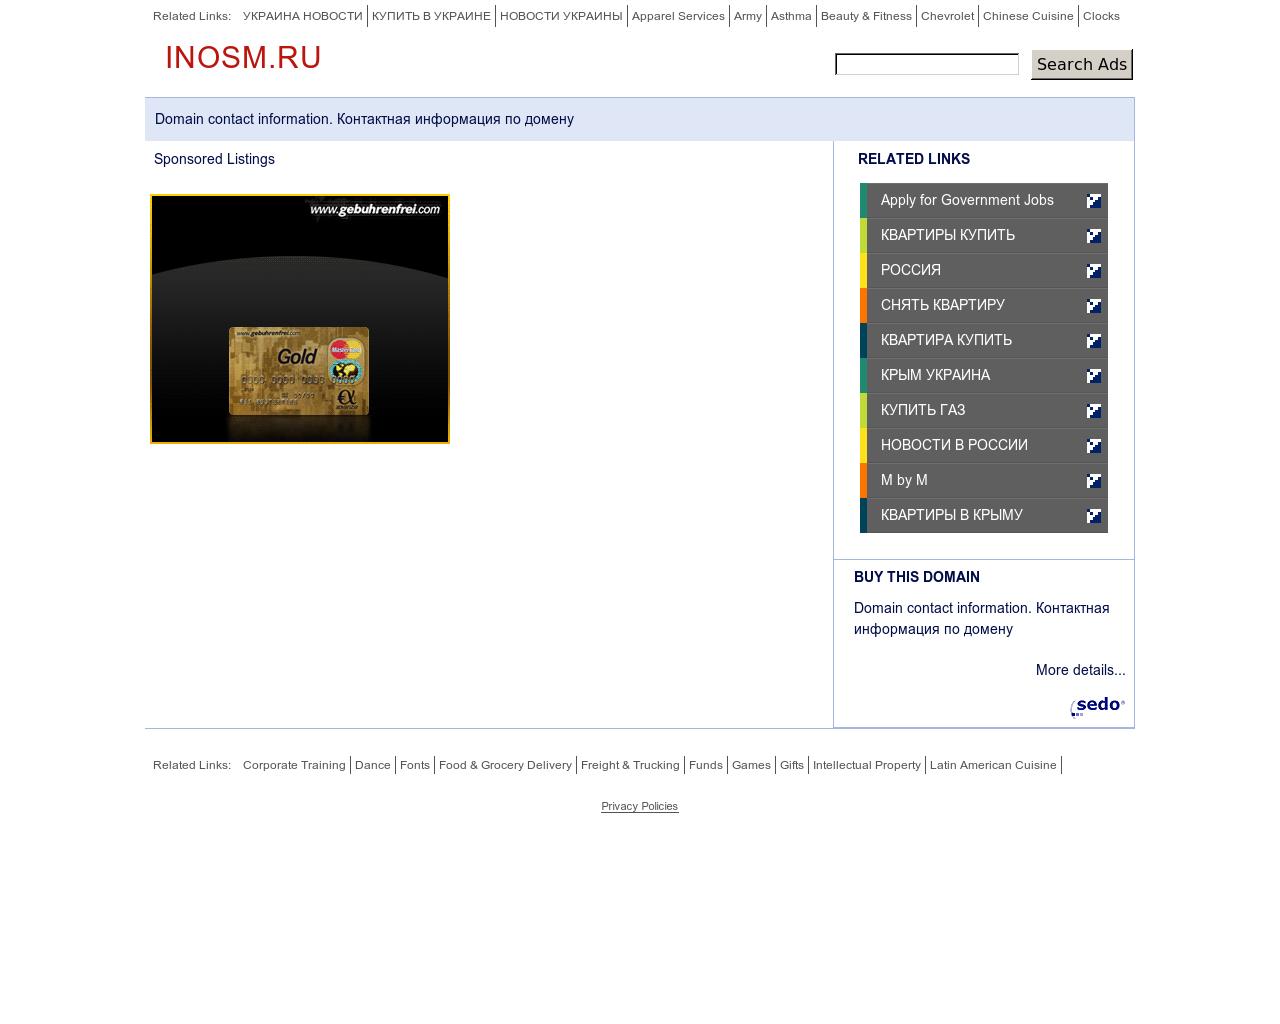 Изображение сайта inosm.ru в разрешении 1280x1024